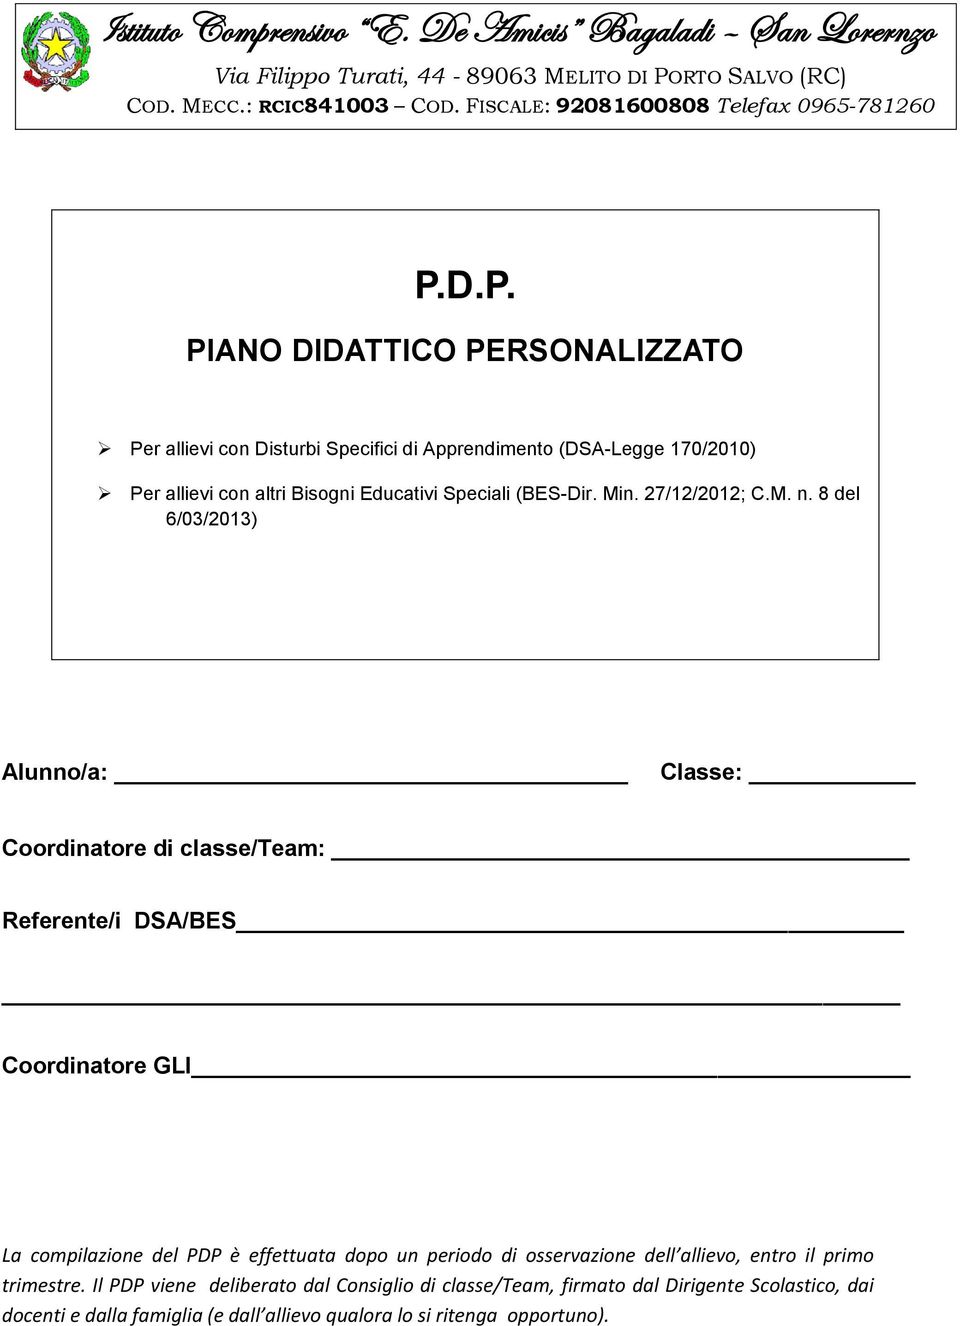 D.P. PIANO DIDATTICO PERSONALIZZATO Per allievi con Disturbi Specifici di Apprendimento (DSA-Legge 170/2010) Per allievi con altri Bisogni Educativi Speciali (BES-Dir. Min. 27/12/2012; C.